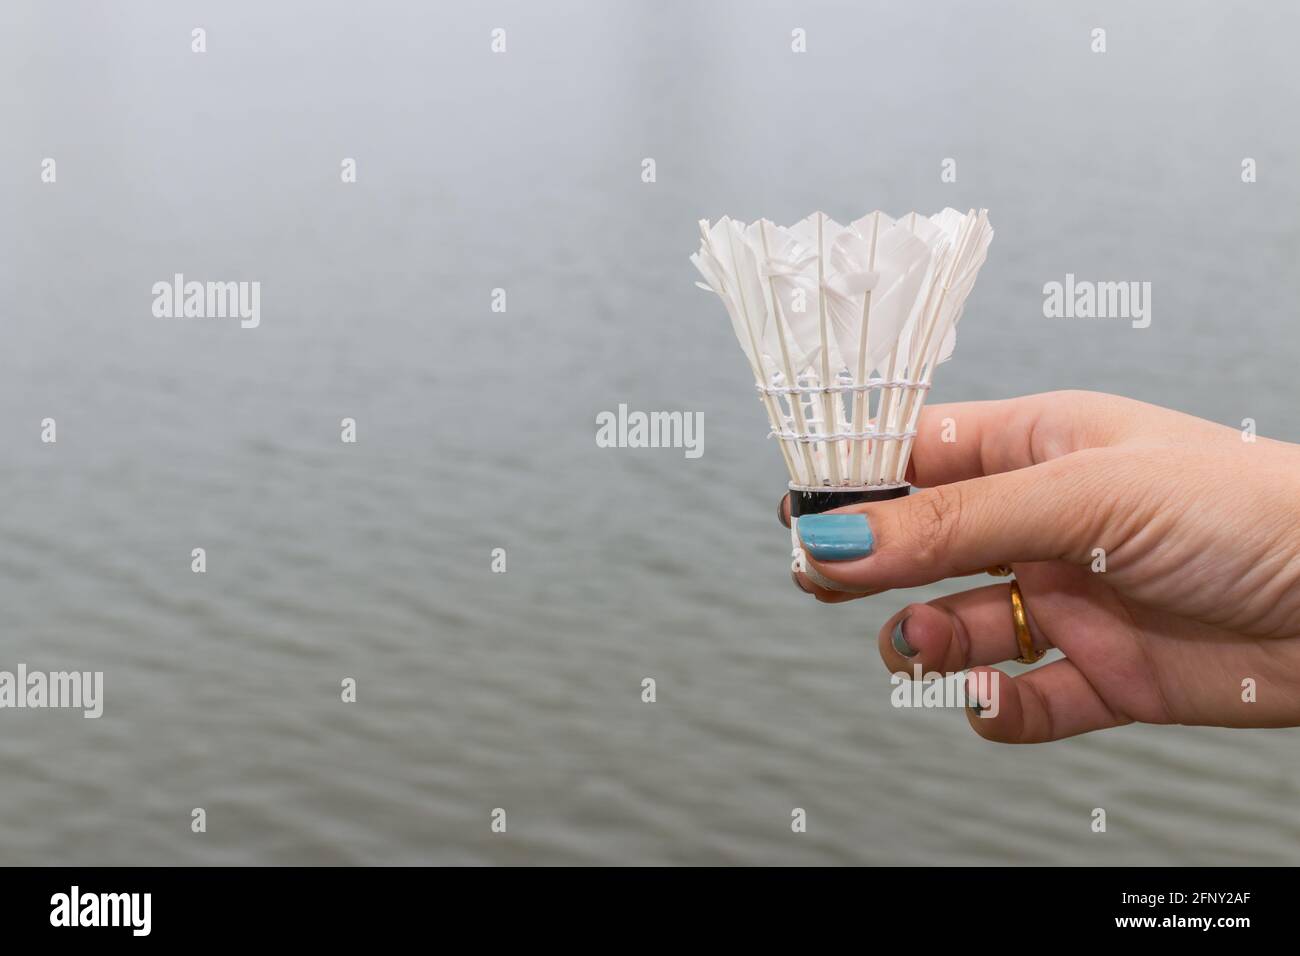 Weibliche Hand halten Federball, Badmintonball auf Wasser Hintergrund  Stockfotografie - Alamy